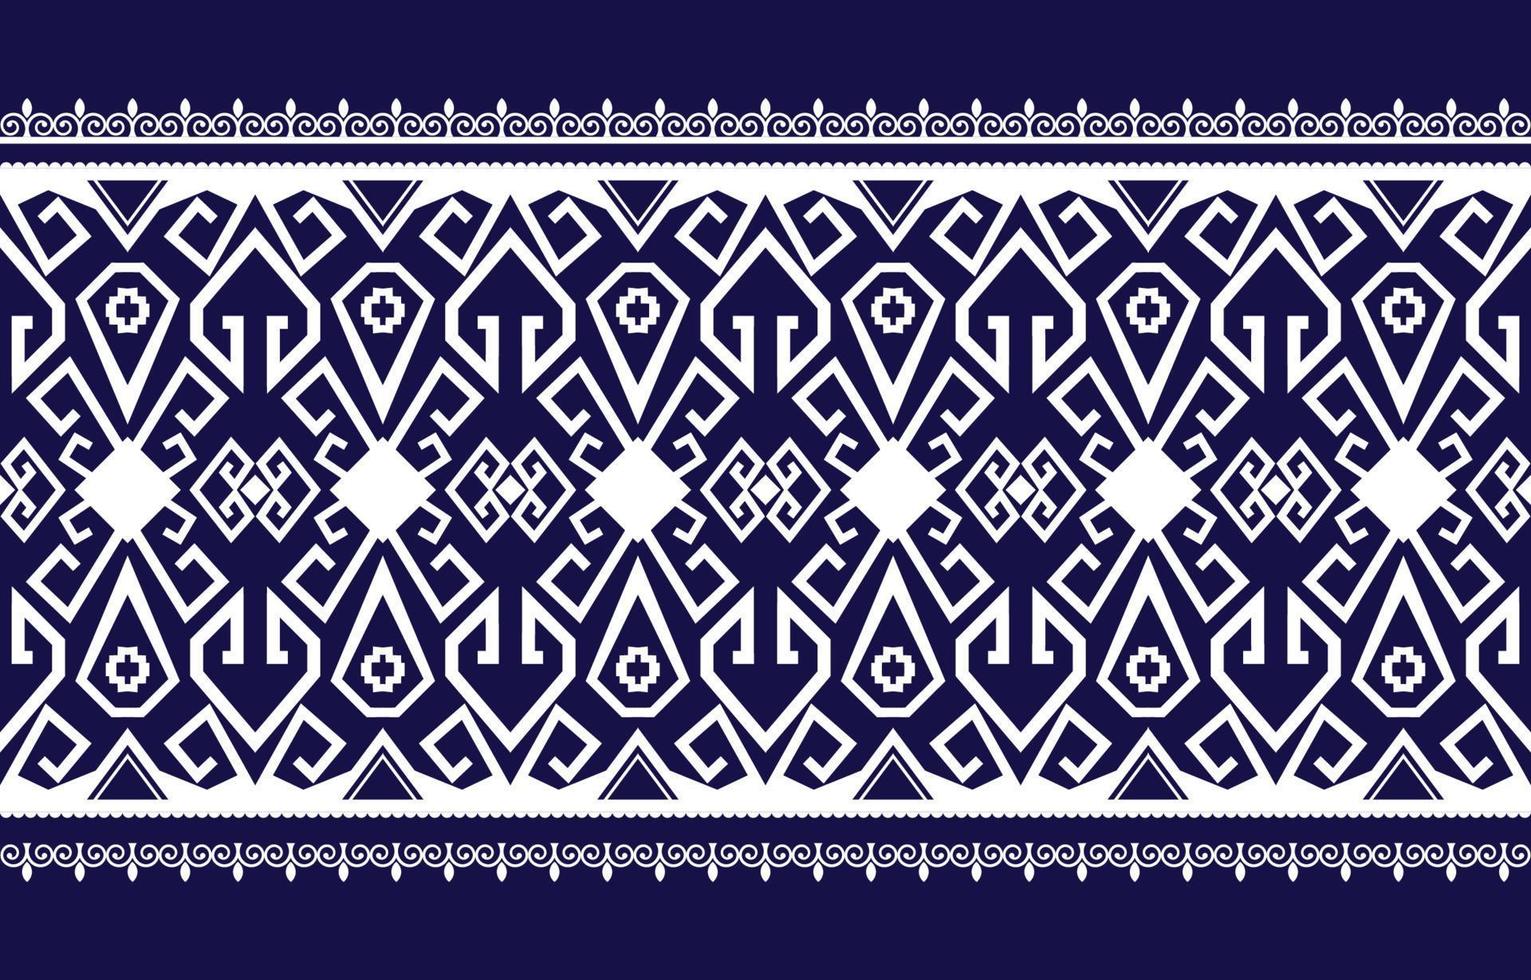 dekoratives abstraktes geomatrisches ethnisches orientalisches muster traditionelles, abstraktes ethnisches hintergrunddesign für teppich, tapete, kleidung, verpackung, batik, stoff, traditionelle druckvektorillustration. vektor